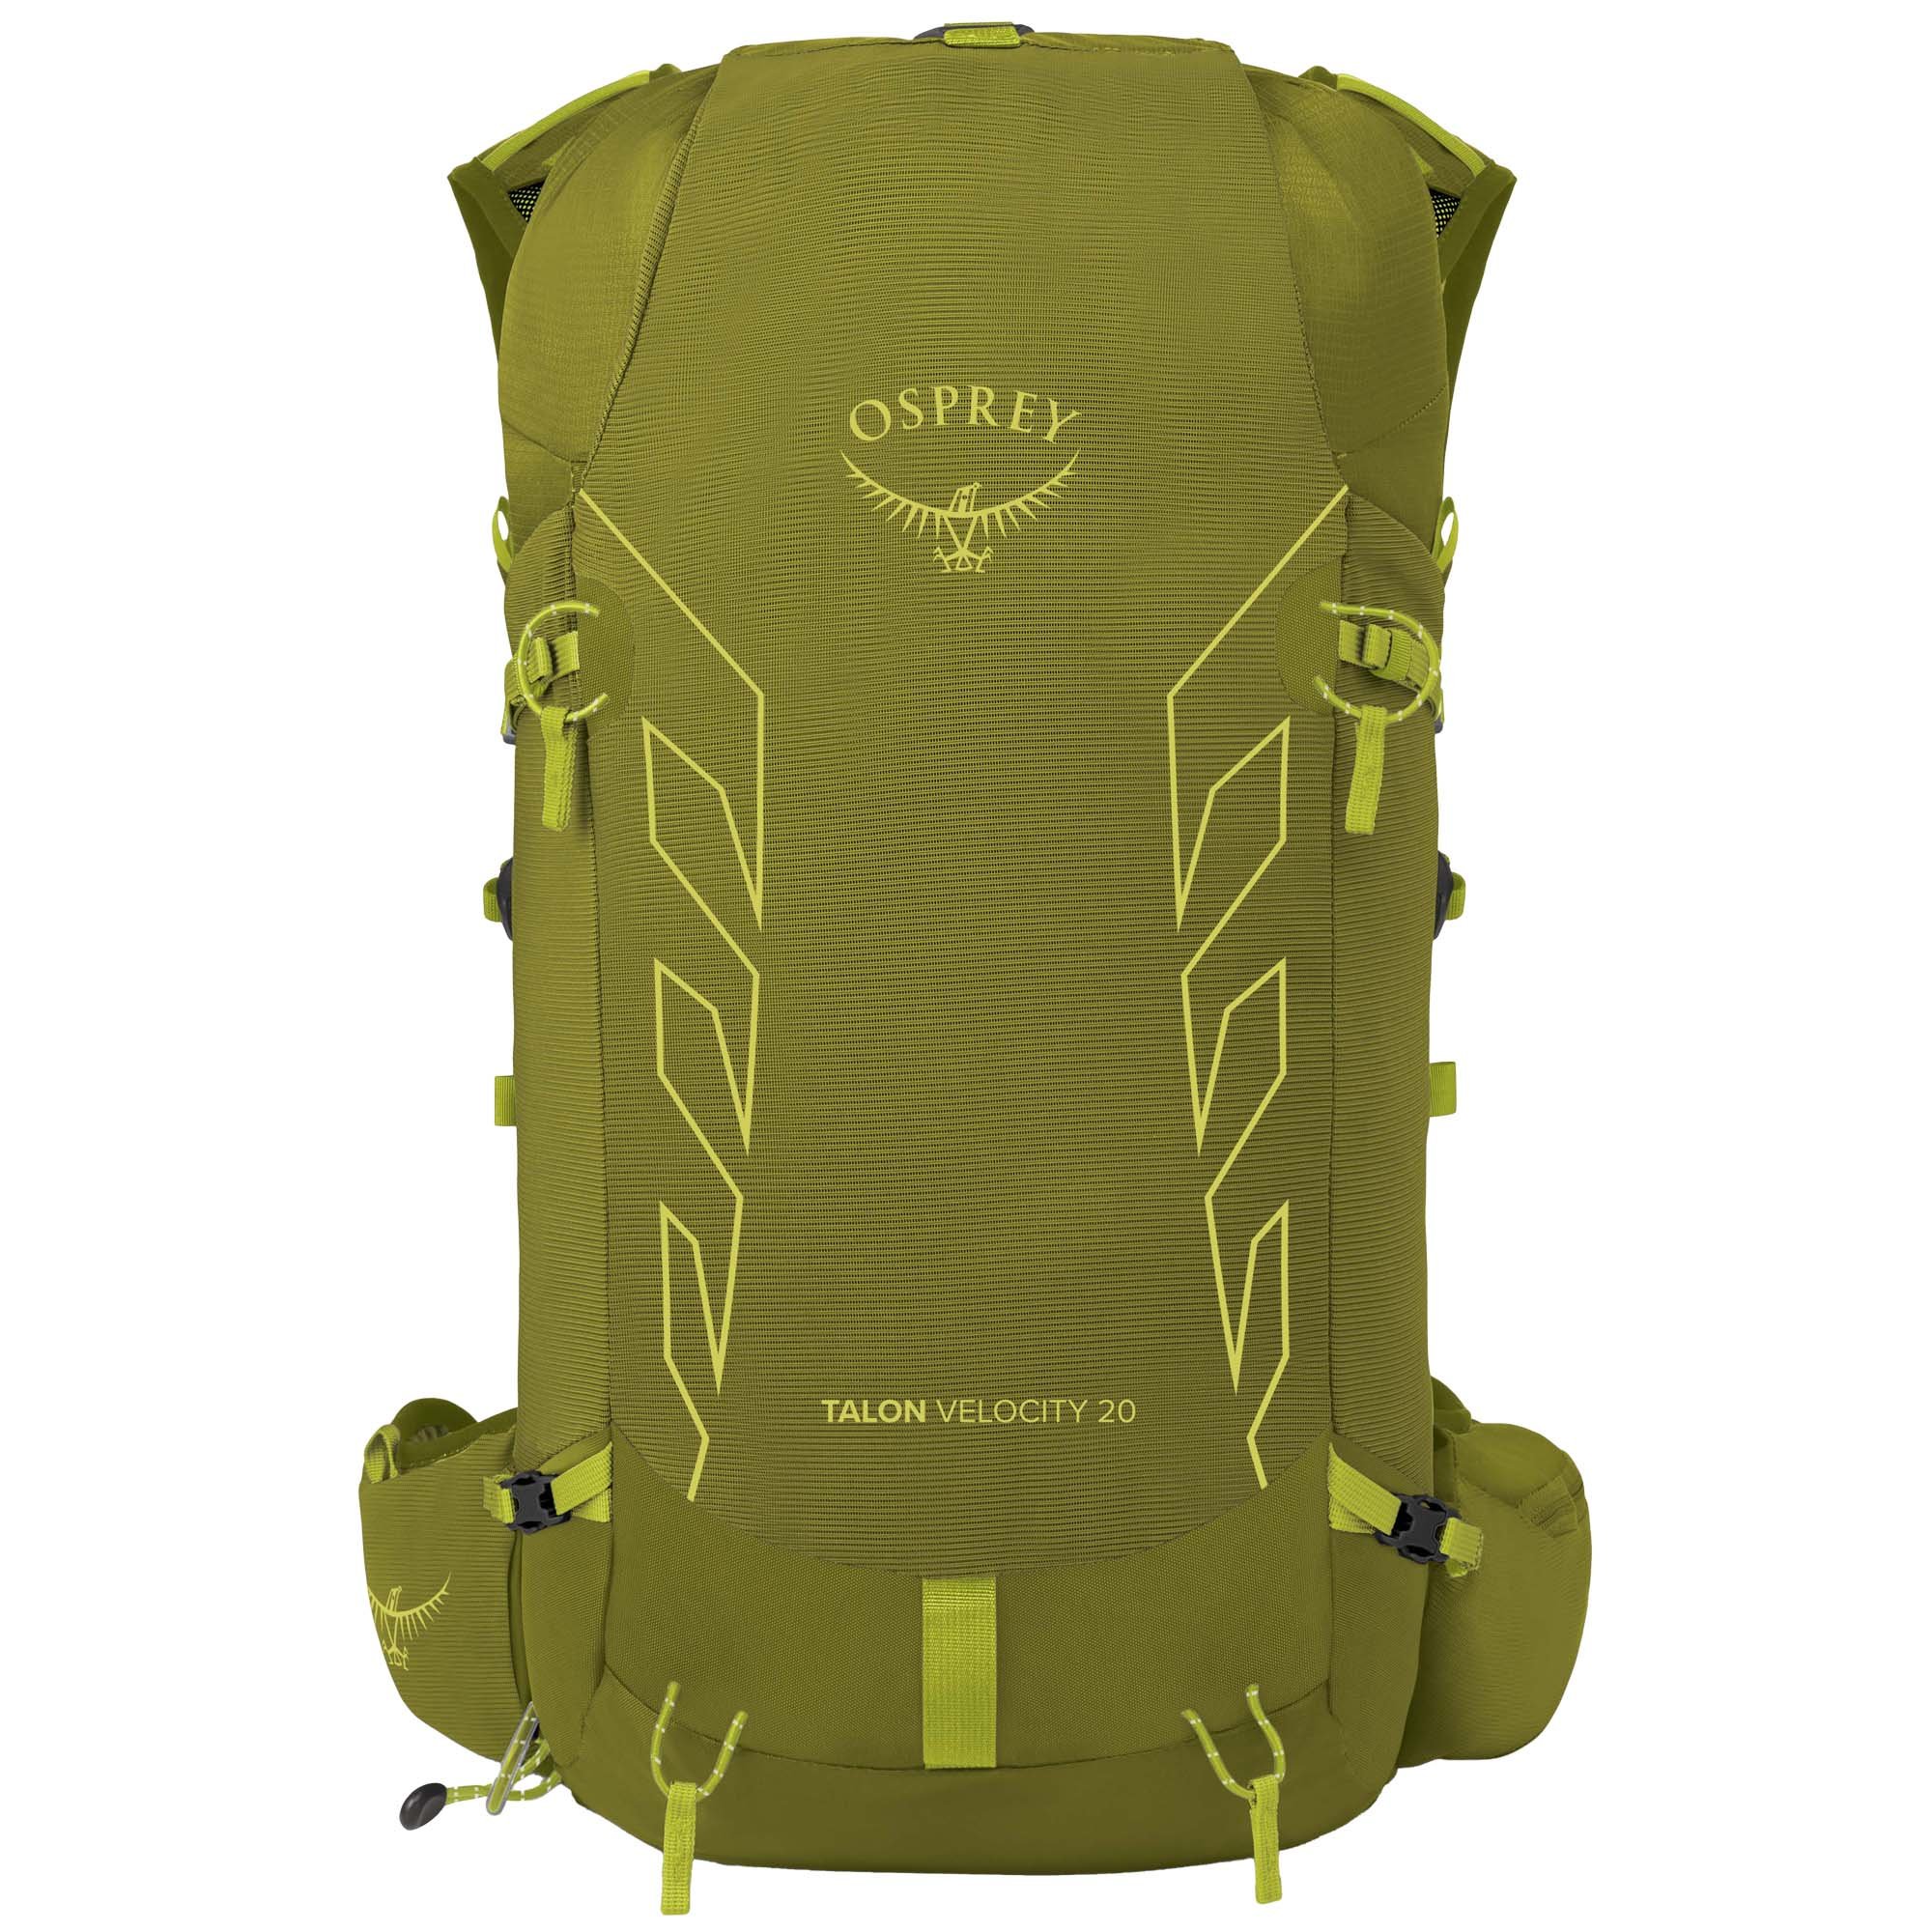 Osprey Talon Velocity 20 Technical Multi-activity Backpack